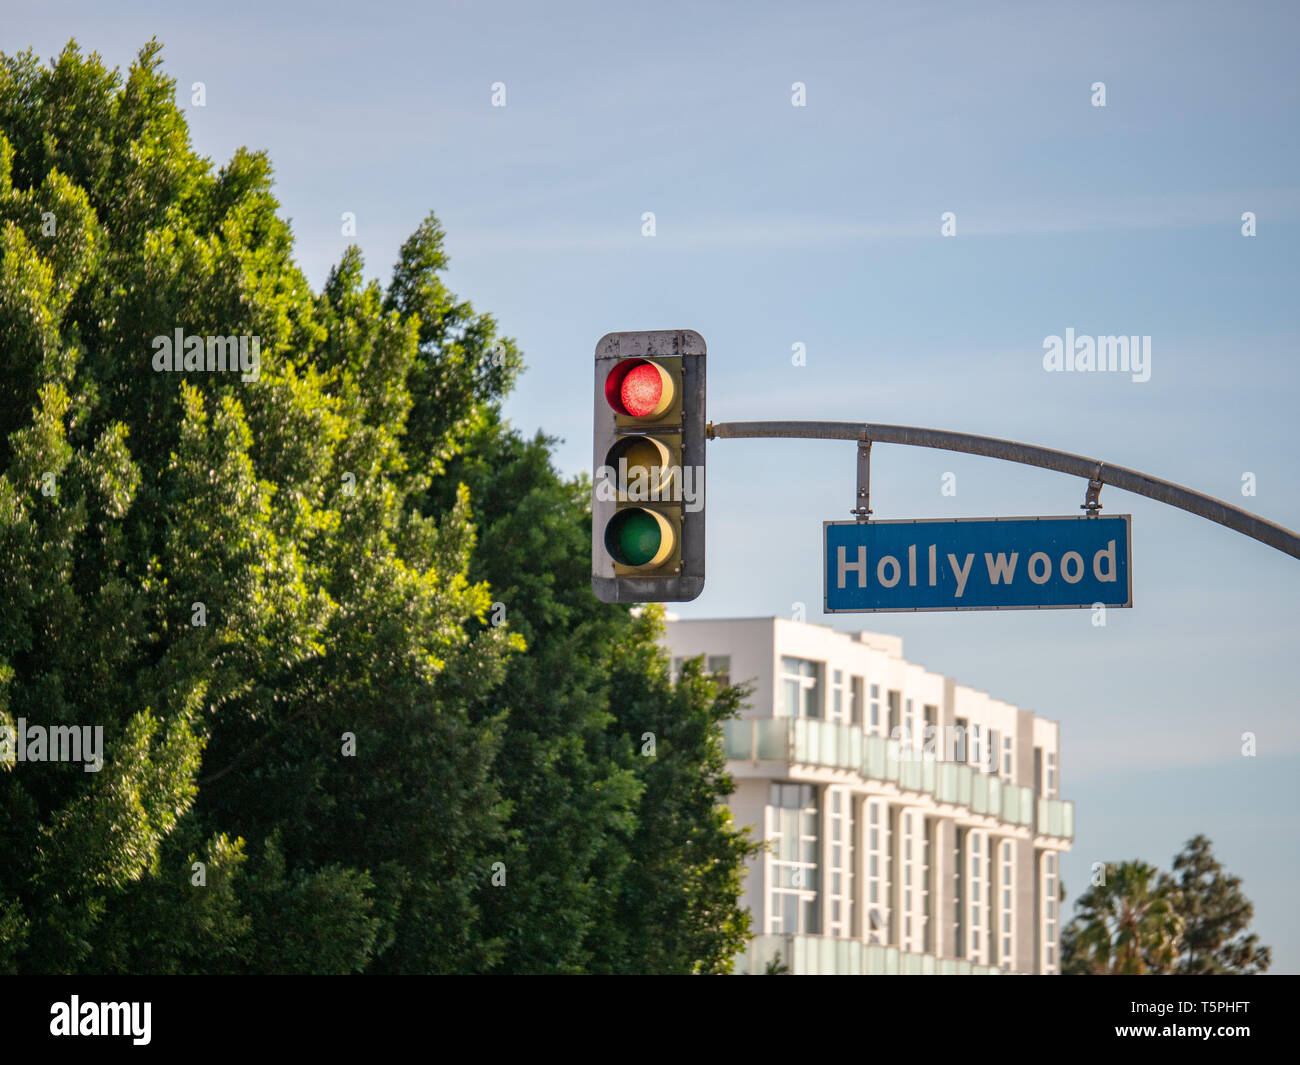 Sinal de hollywood boulevard blvd em um semáforo de luz